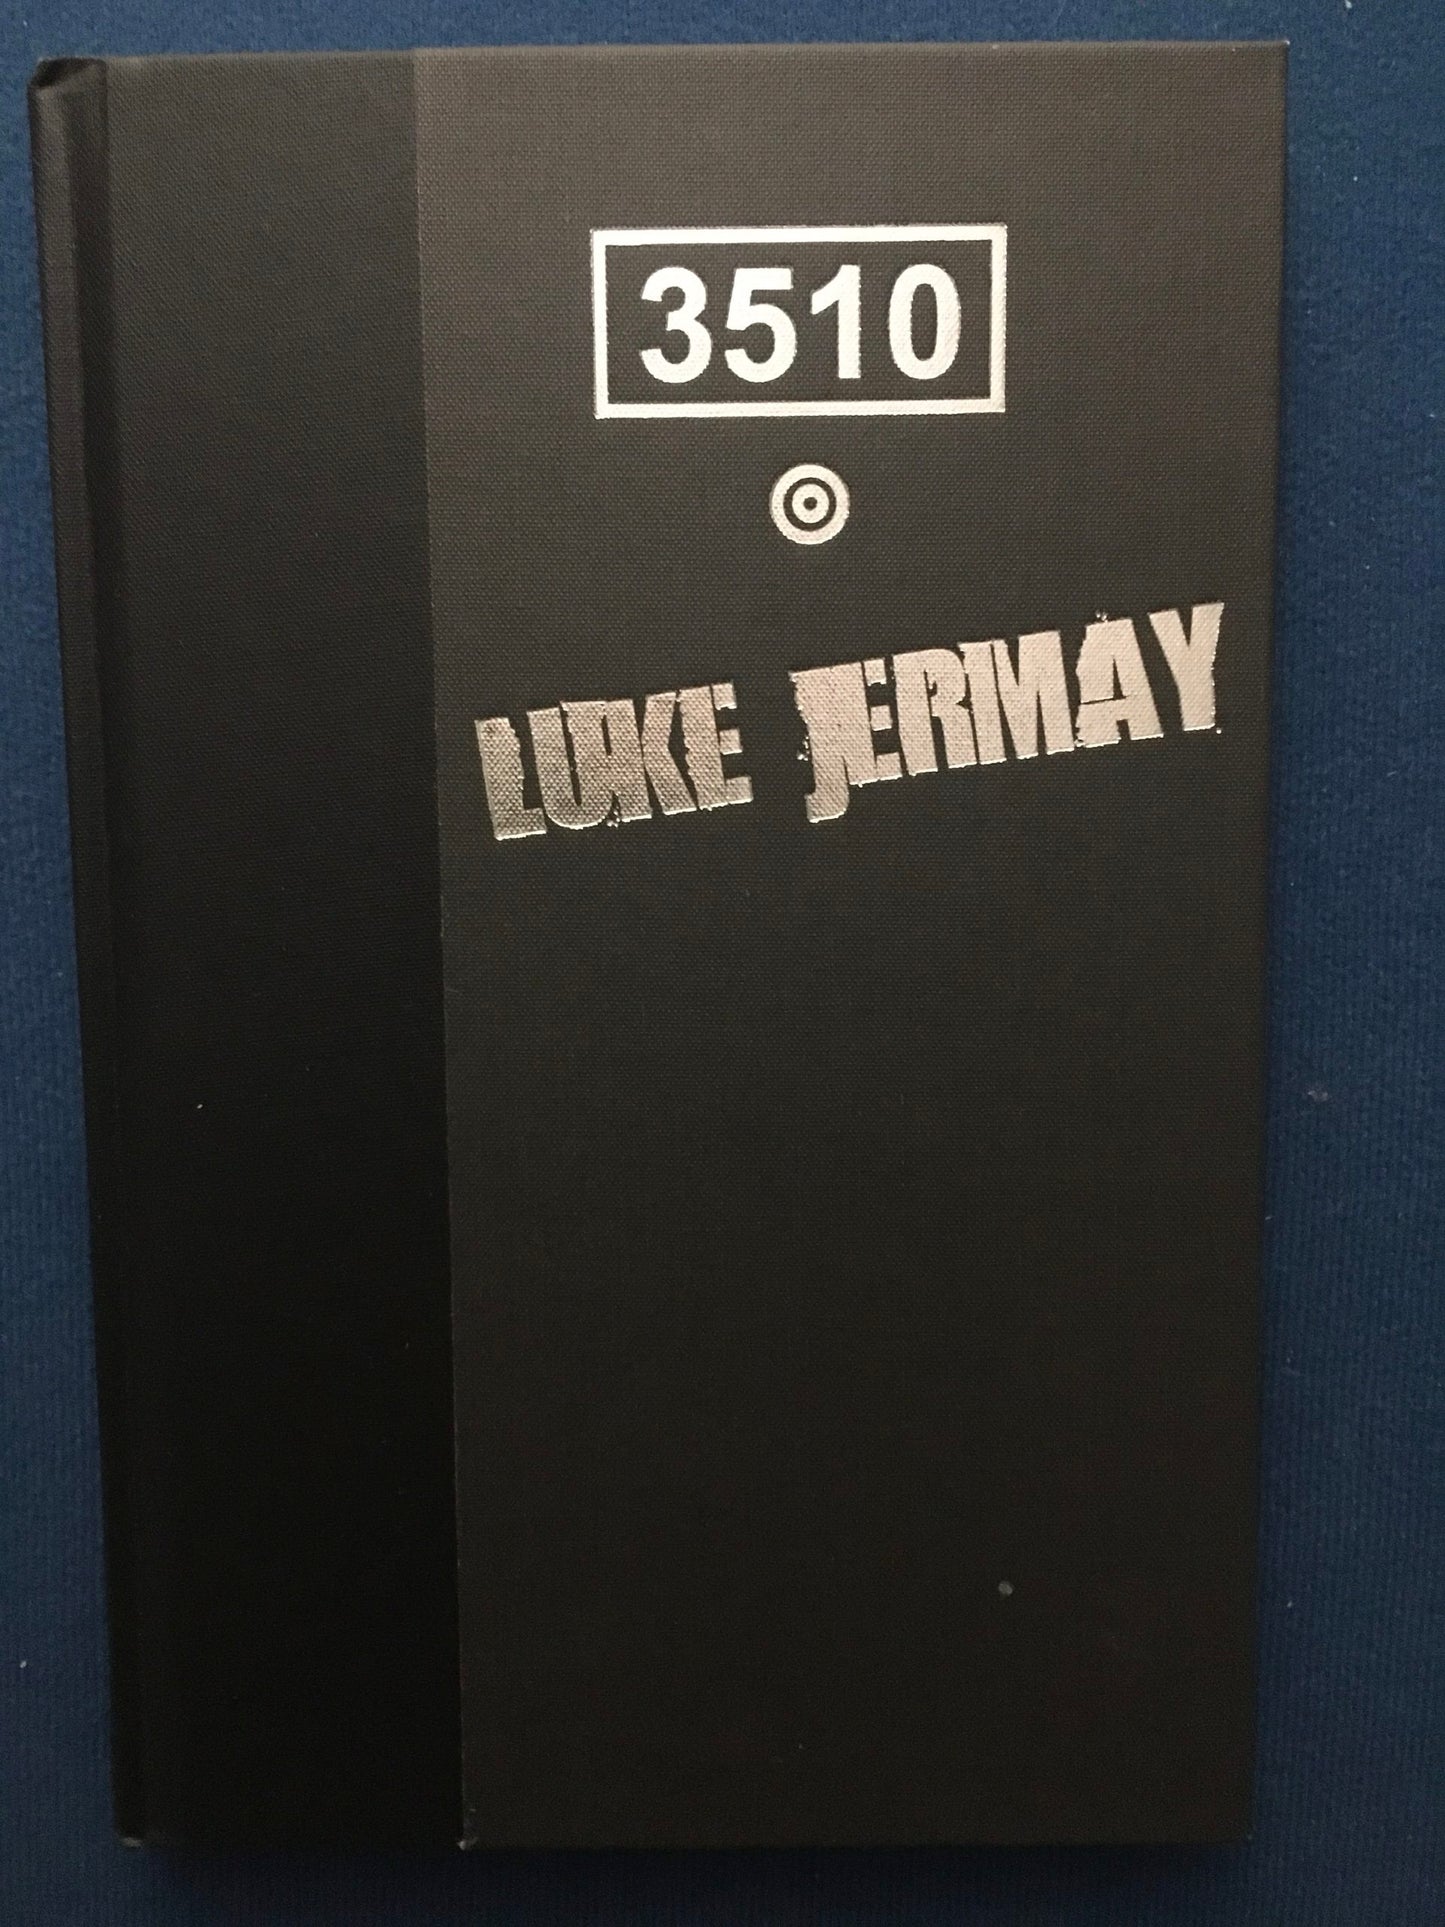 3510, Luke Jermay